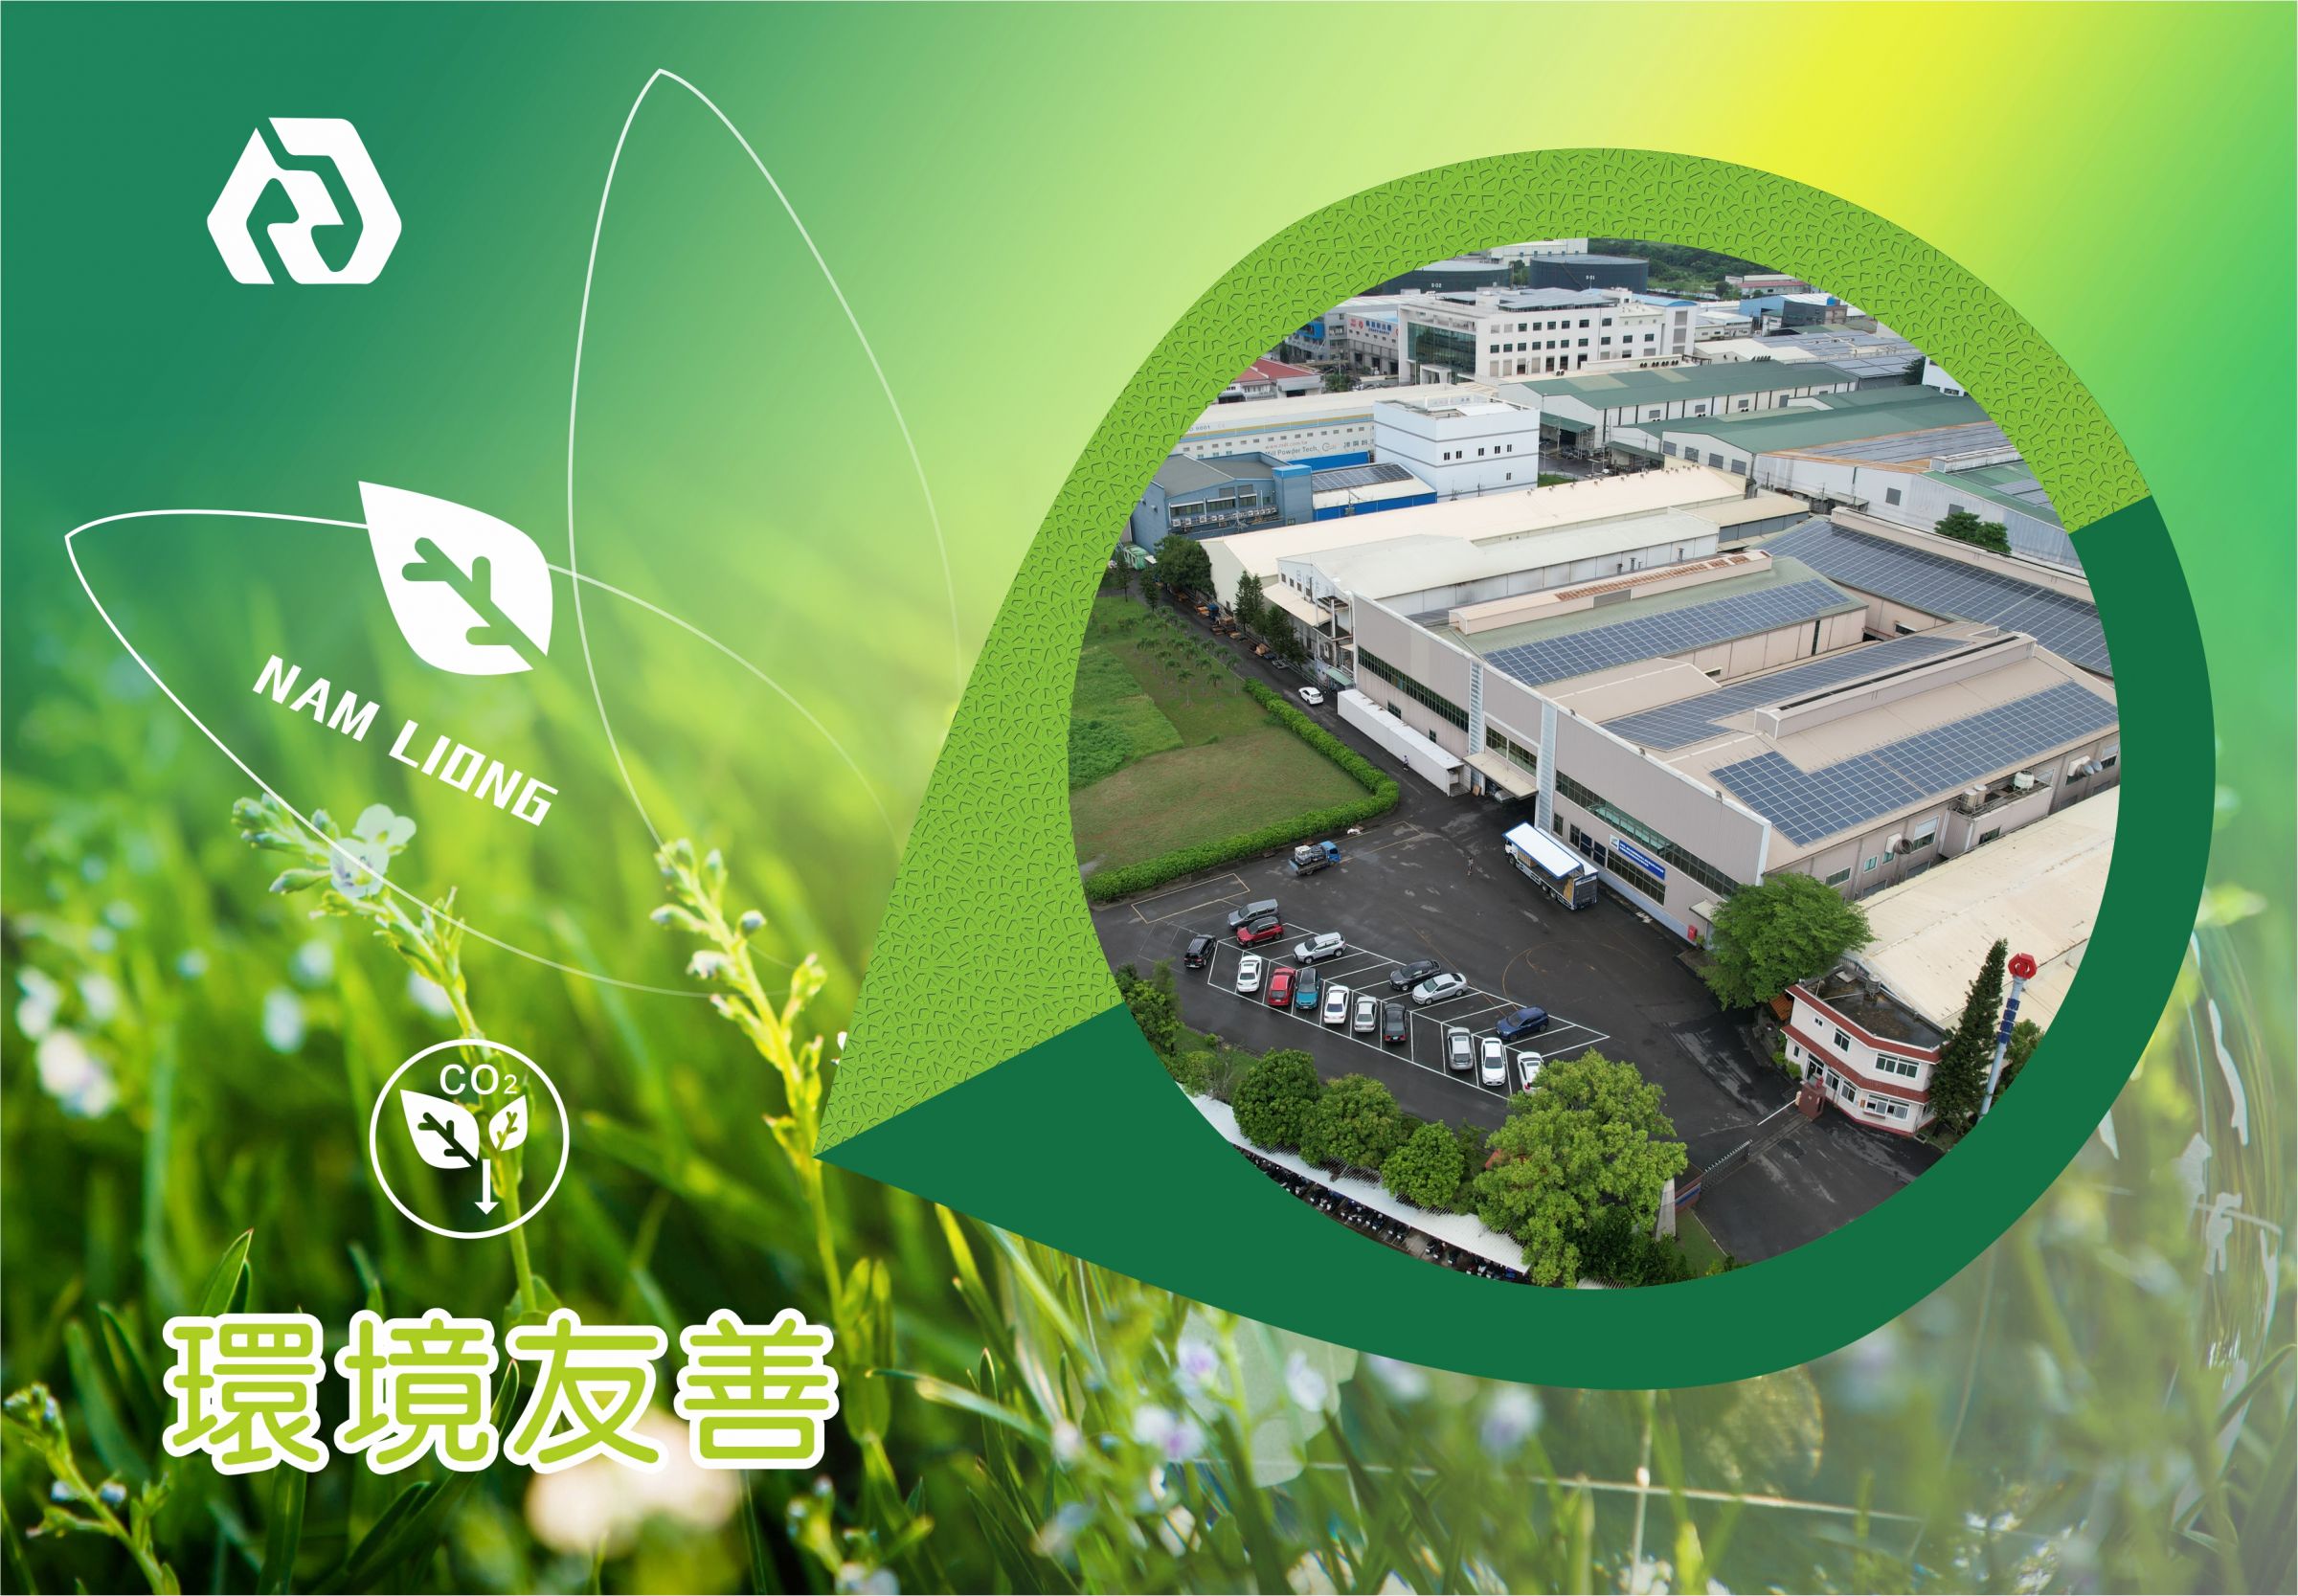 حماية البيئة والاستدامة لـ Nam Liong Global